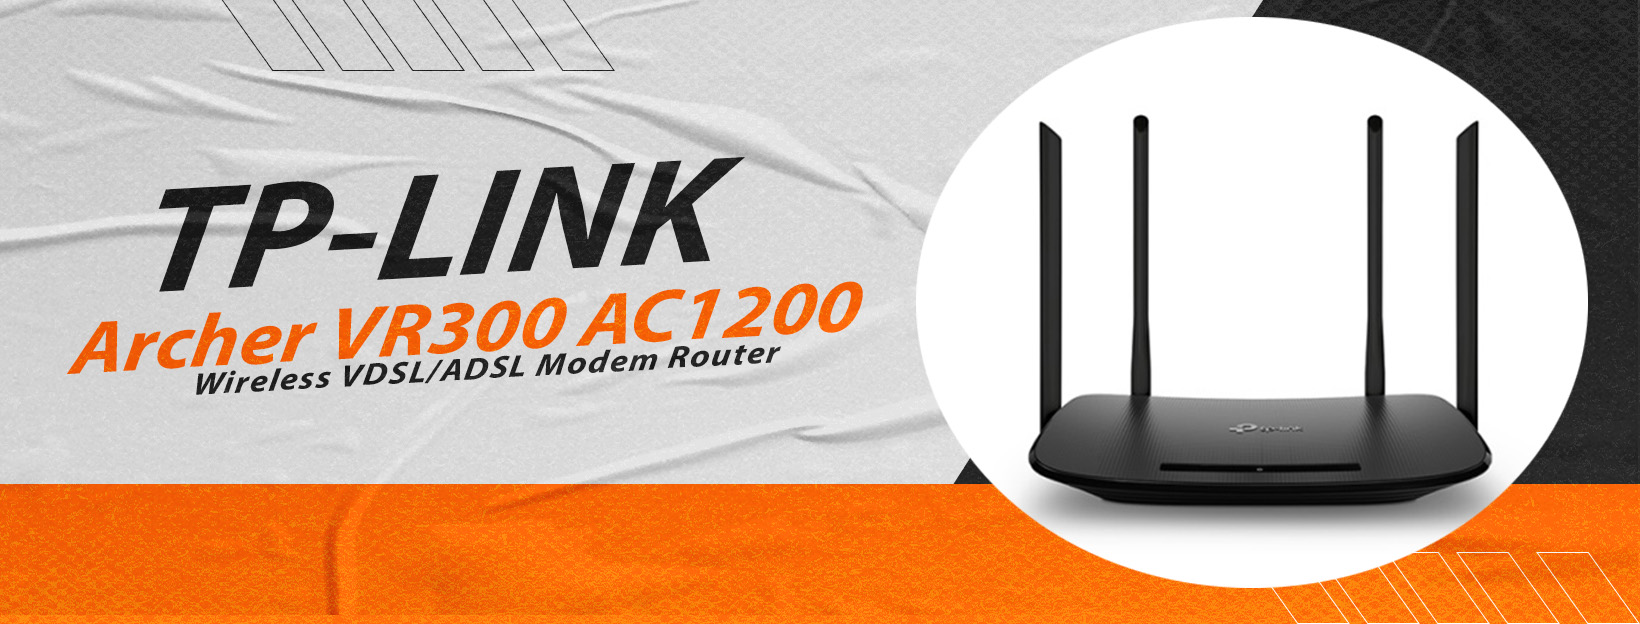 Tp Link Modem router uygun fiyatlariyla sadece Tekburada.com'da